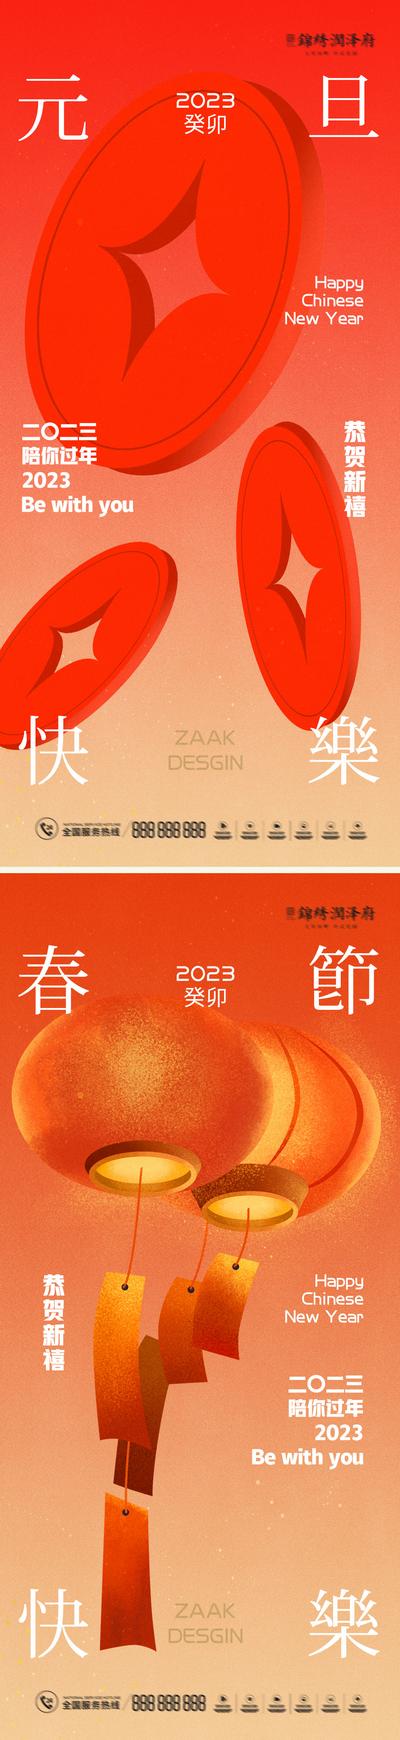 南门网 海报 系列 房地产 元旦 中国传统节日 2023 兔年 春节 小年 喜庆